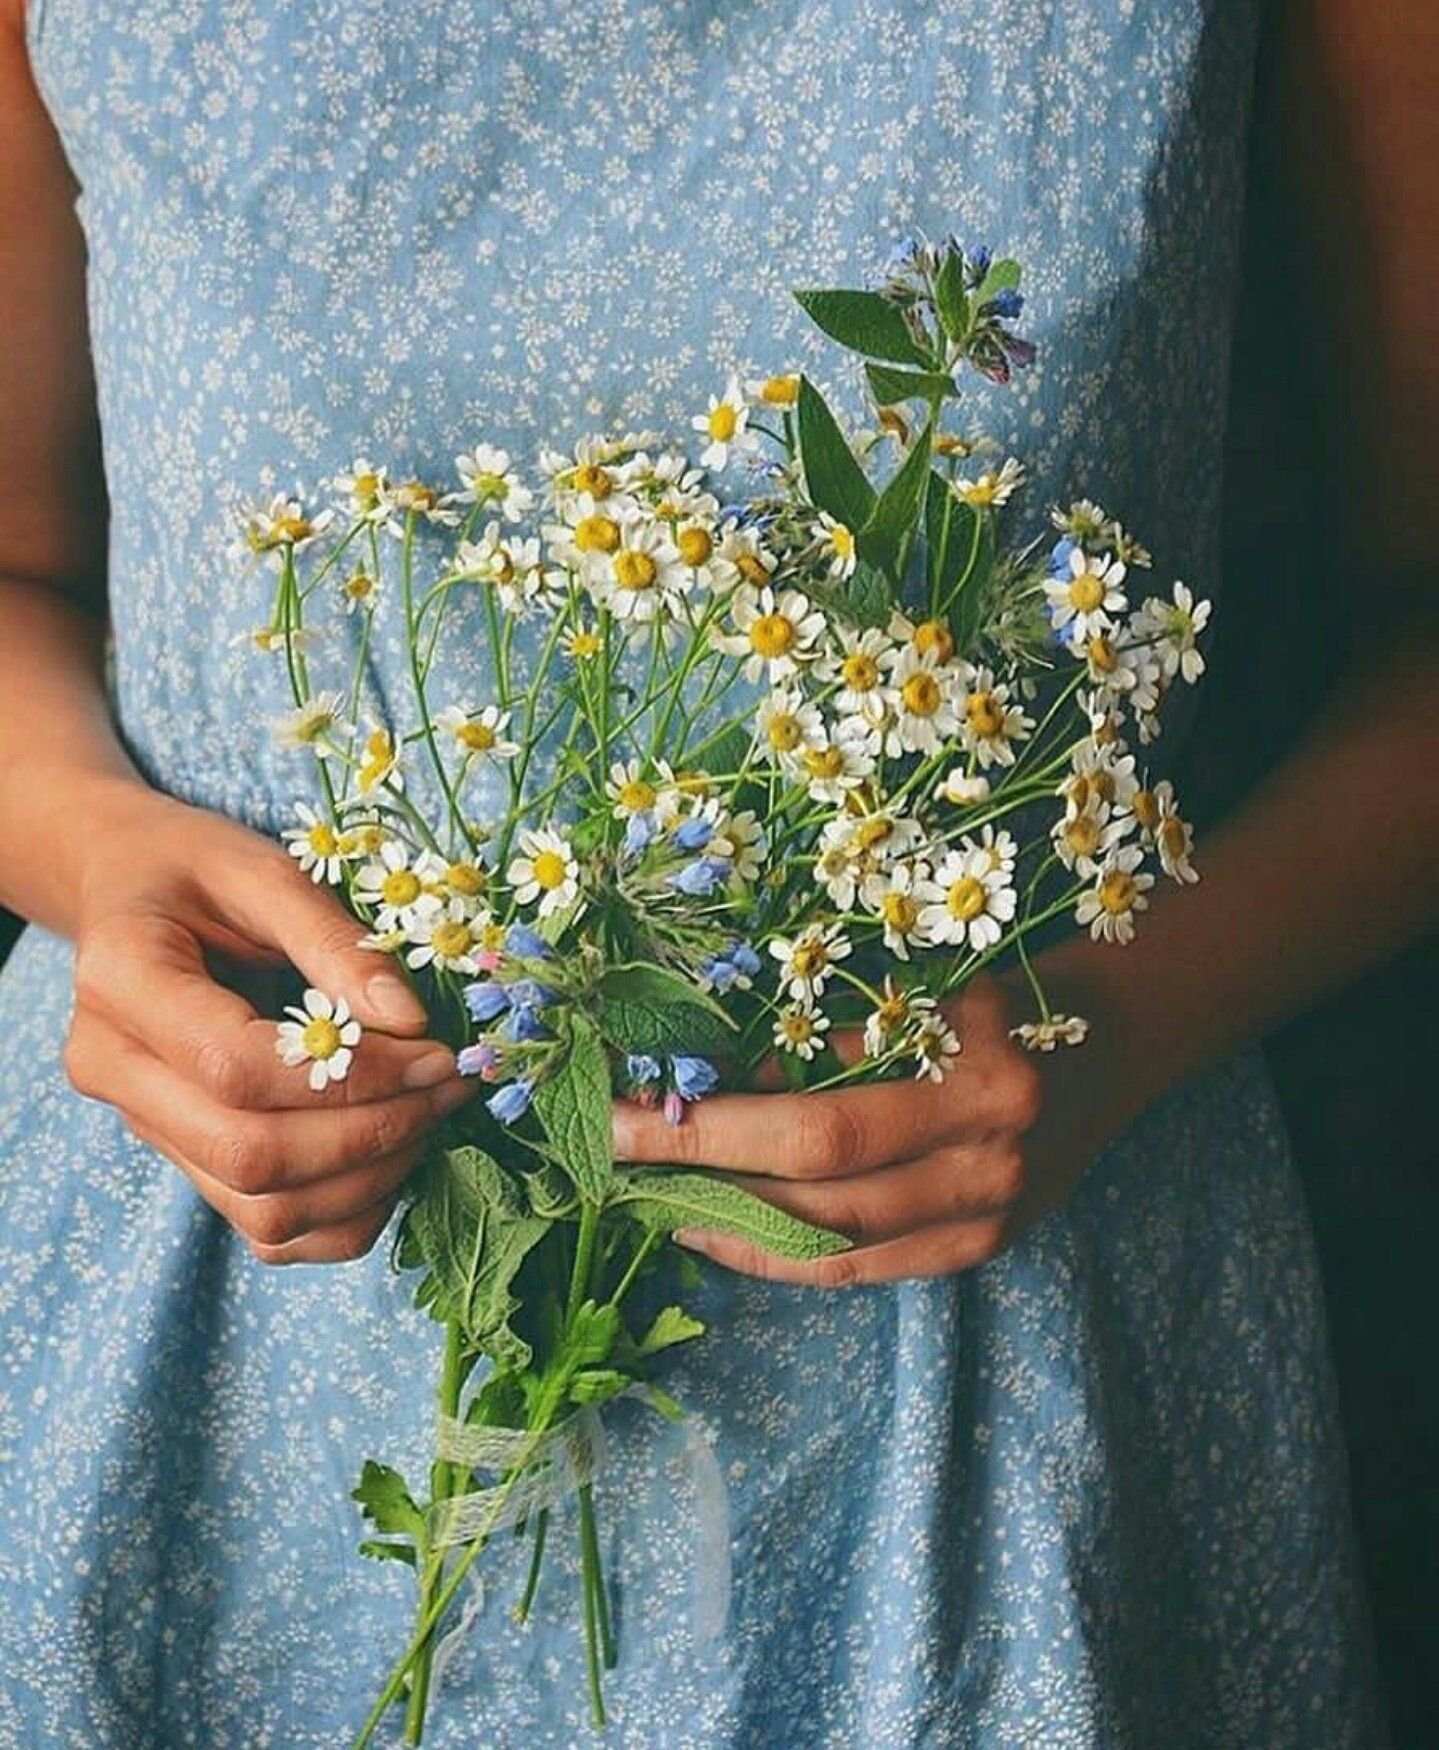 Букетик полевых цветов в руке